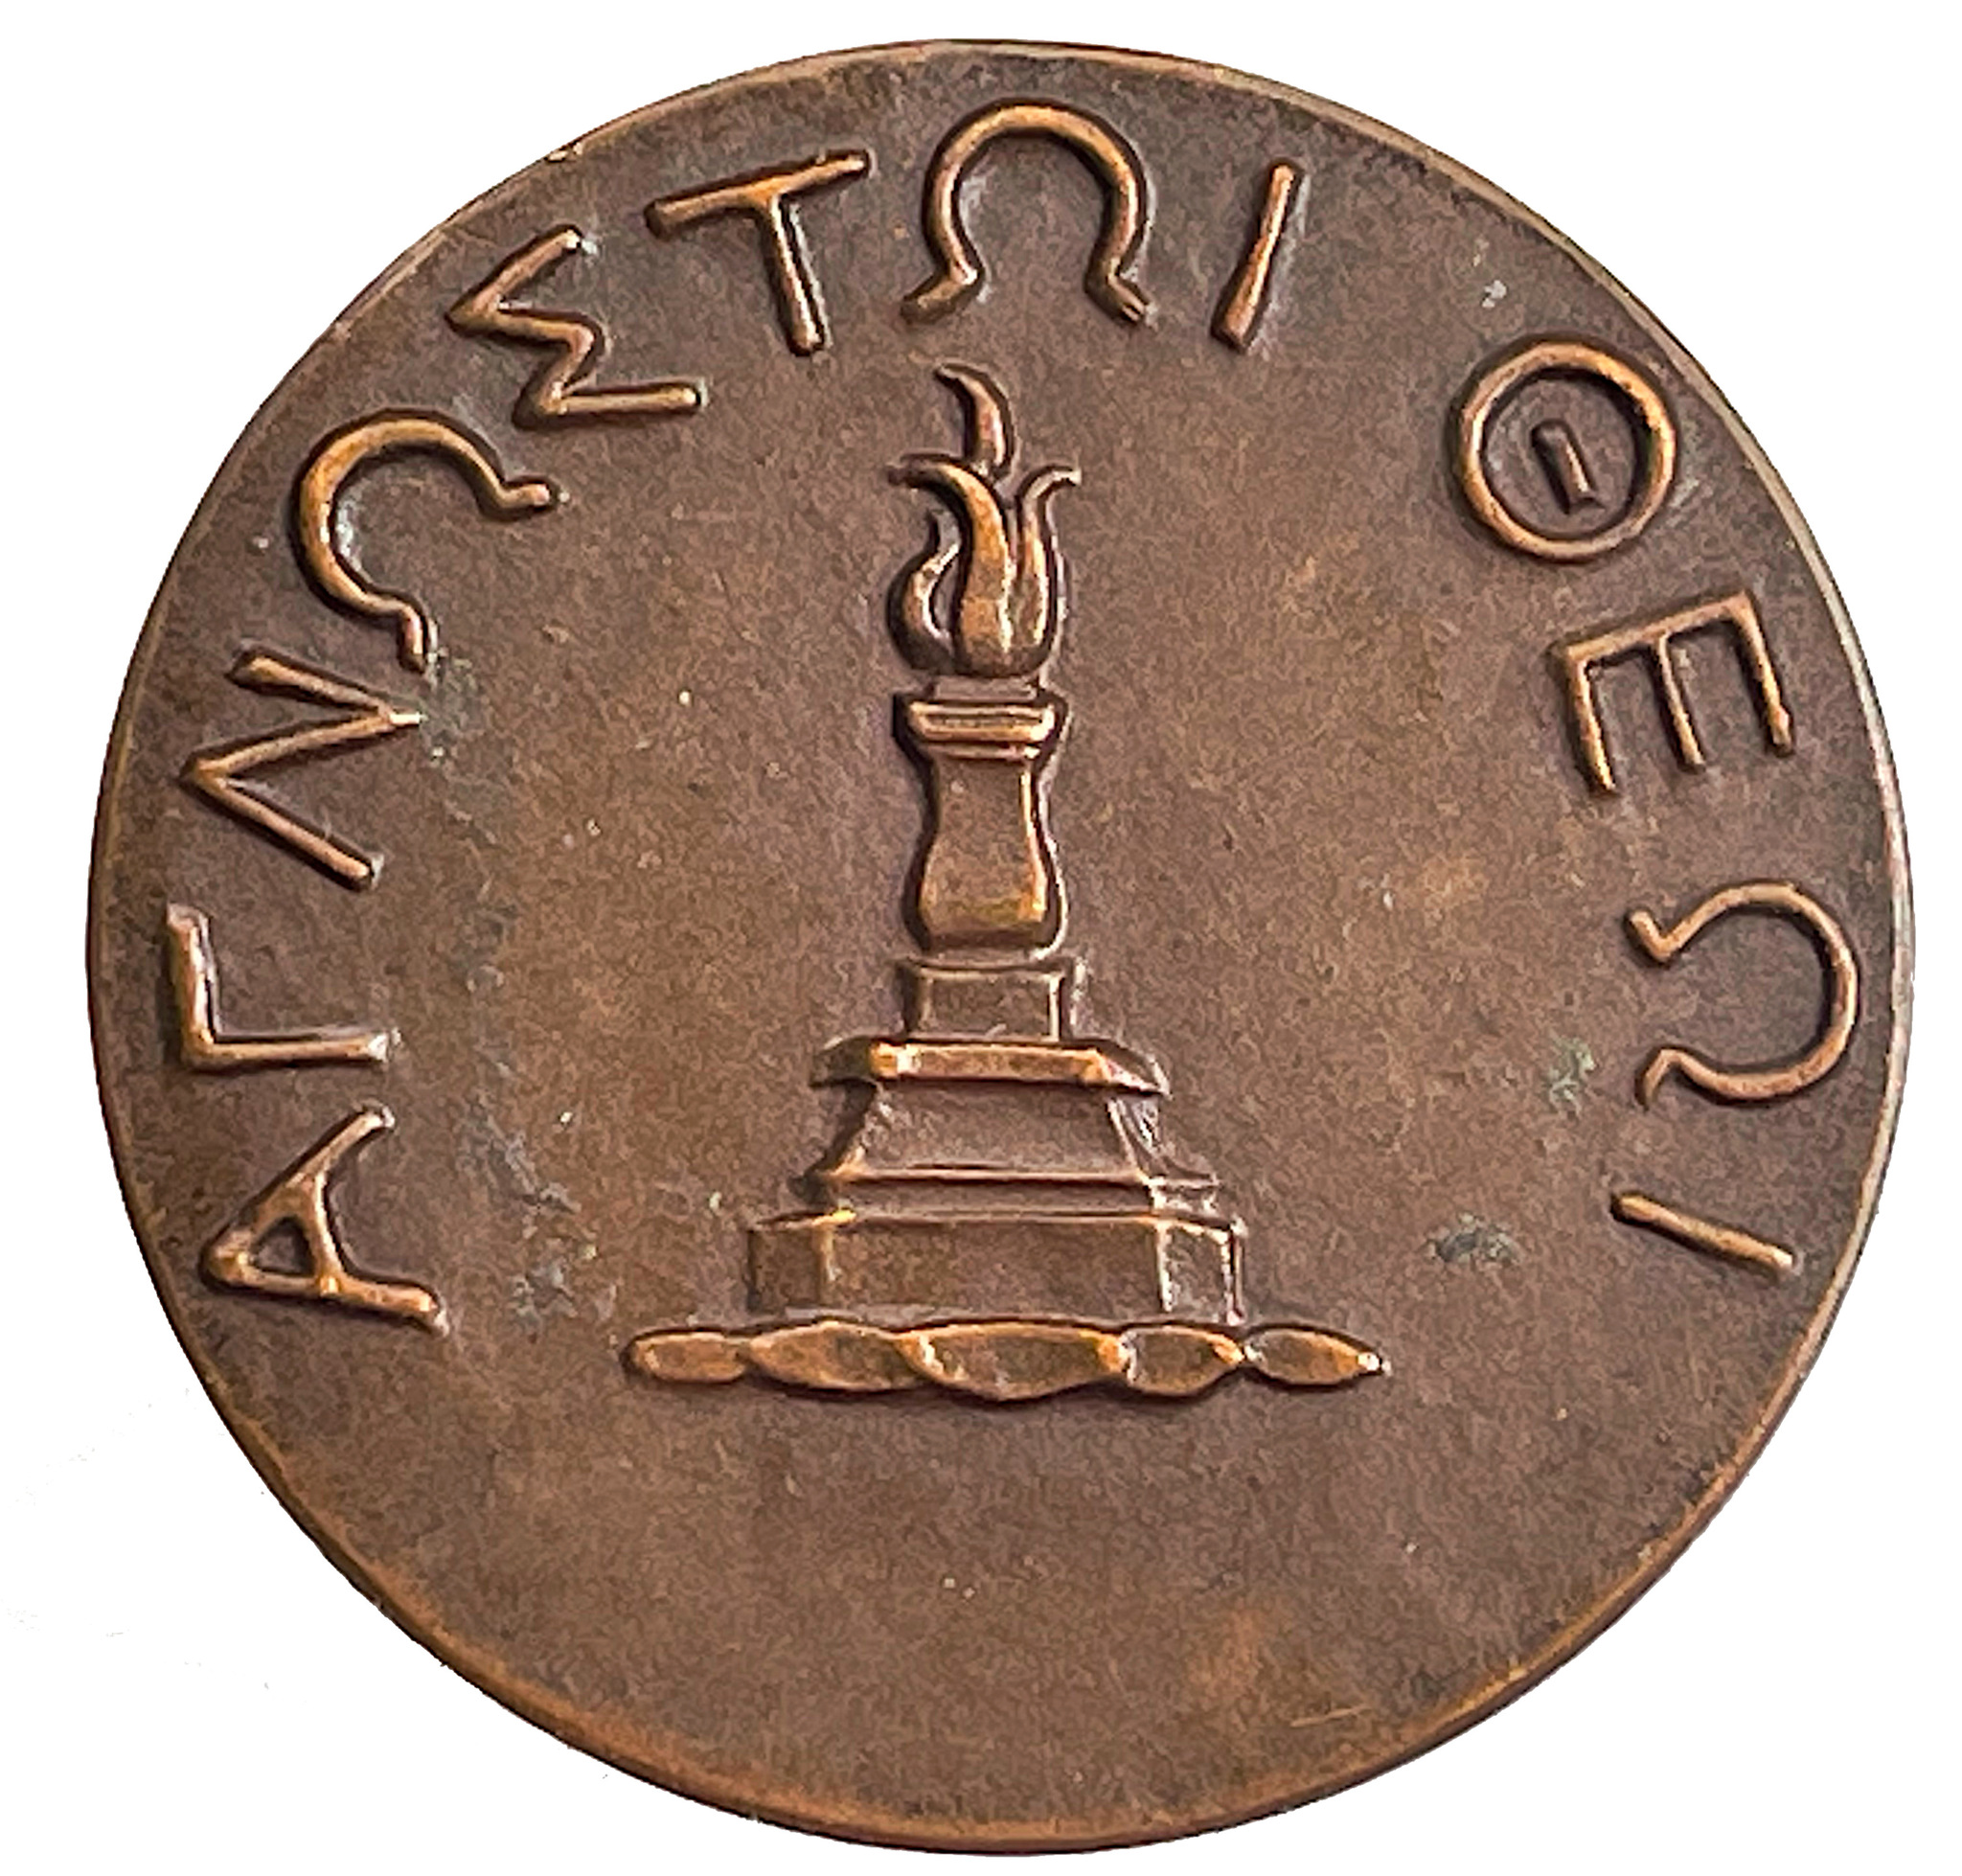 Carl Milles - Verner von Heidenstam 70 år 6 juli 1929 bronsmedalj - Mycket sällsynt